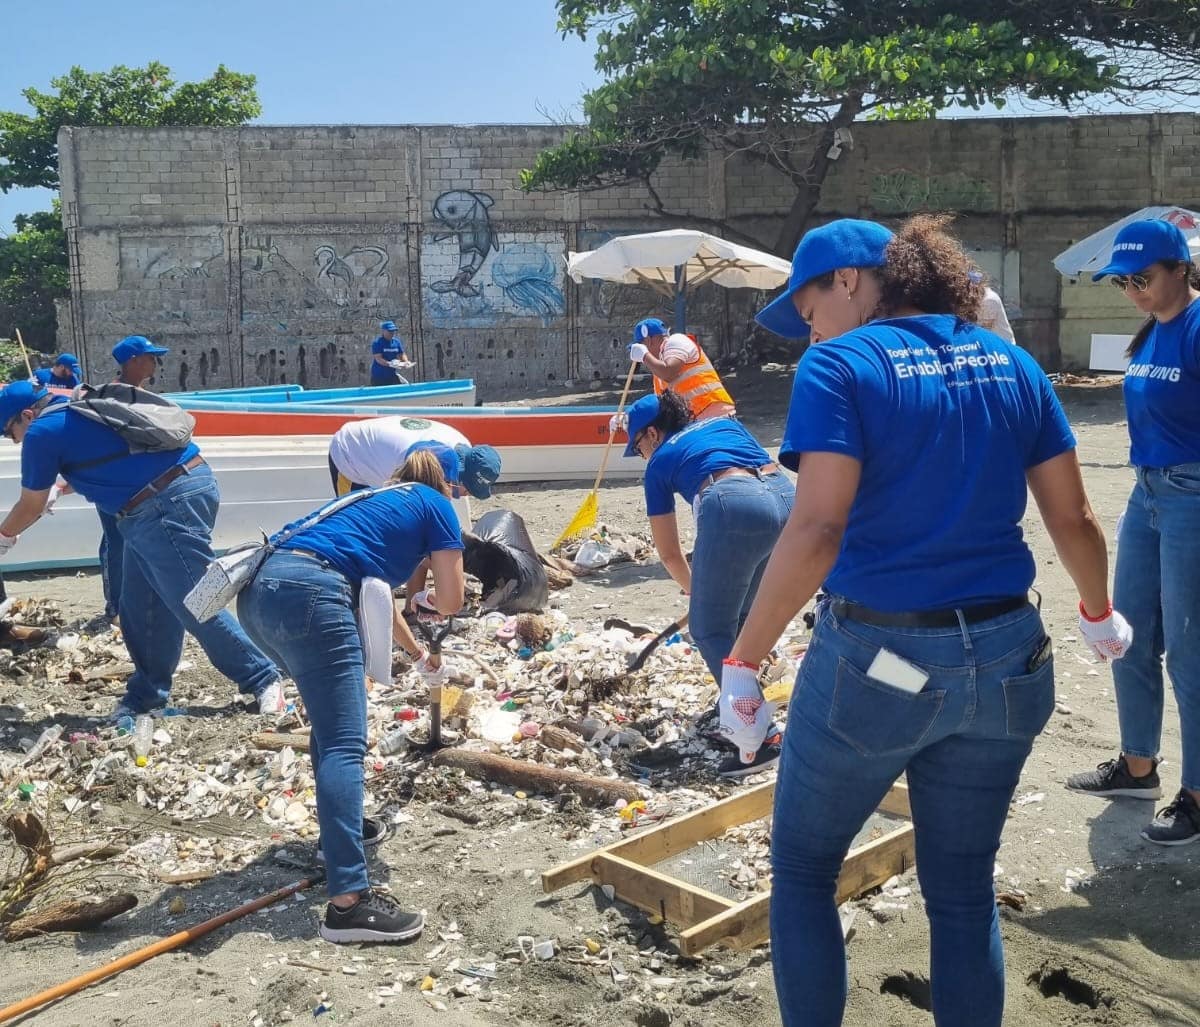 Voluntariado de Samsung en República Dominicana desarrolla jornada de limpieza en Playa Manresa, GamersRd